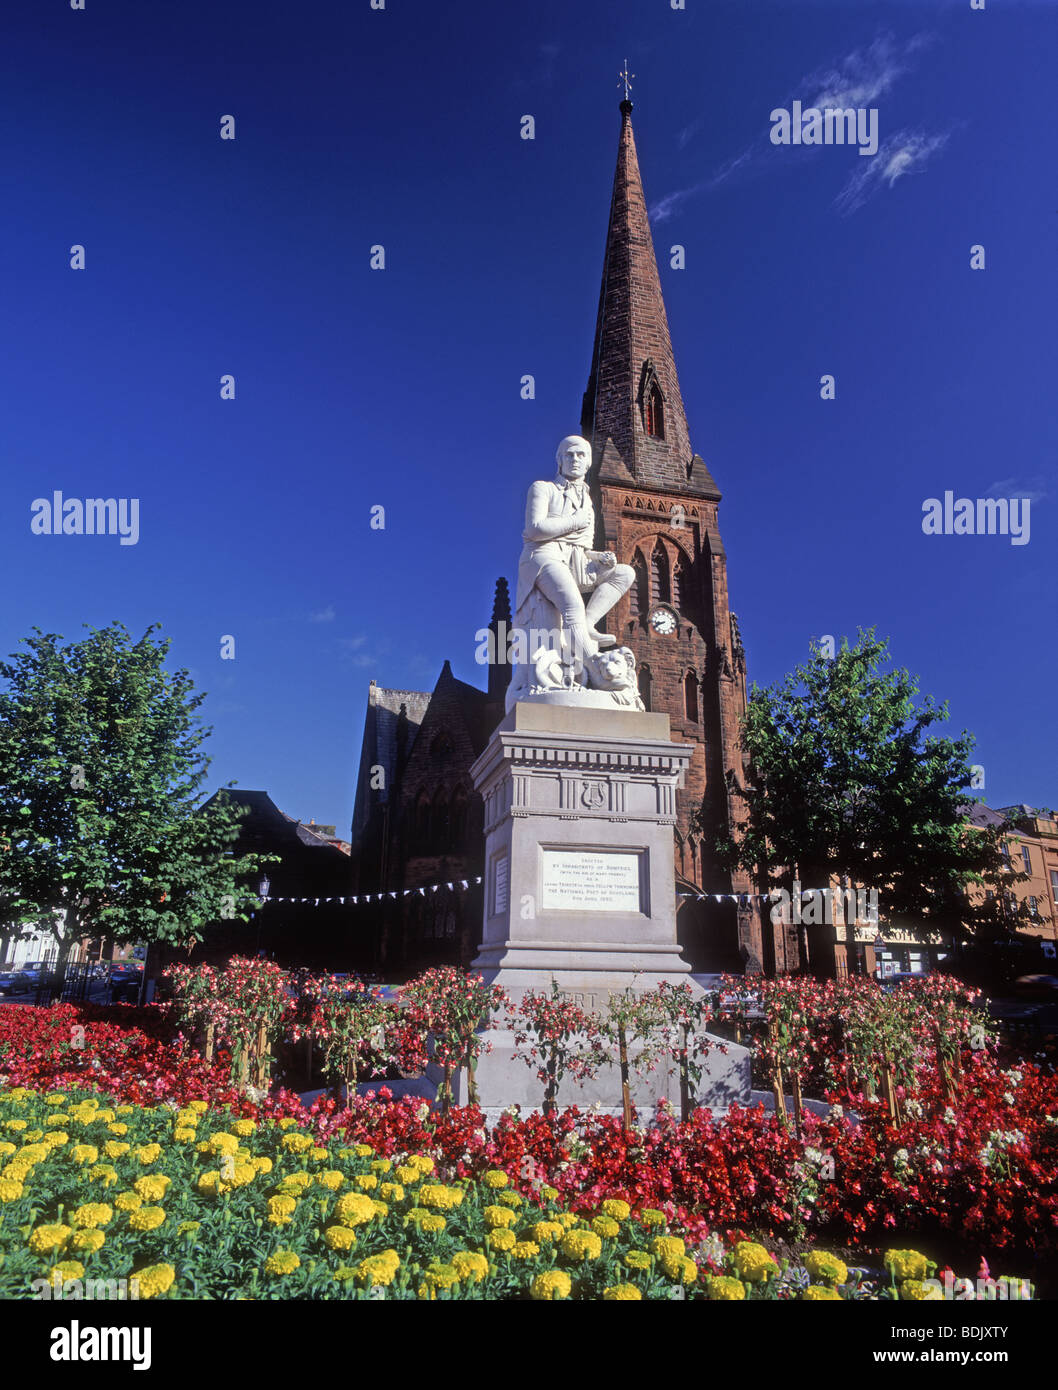 Die Statue berühmten schottischen Barden Robert Burns in Dumfries Stadtzentrum SCO 5324 IFV Stockfoto